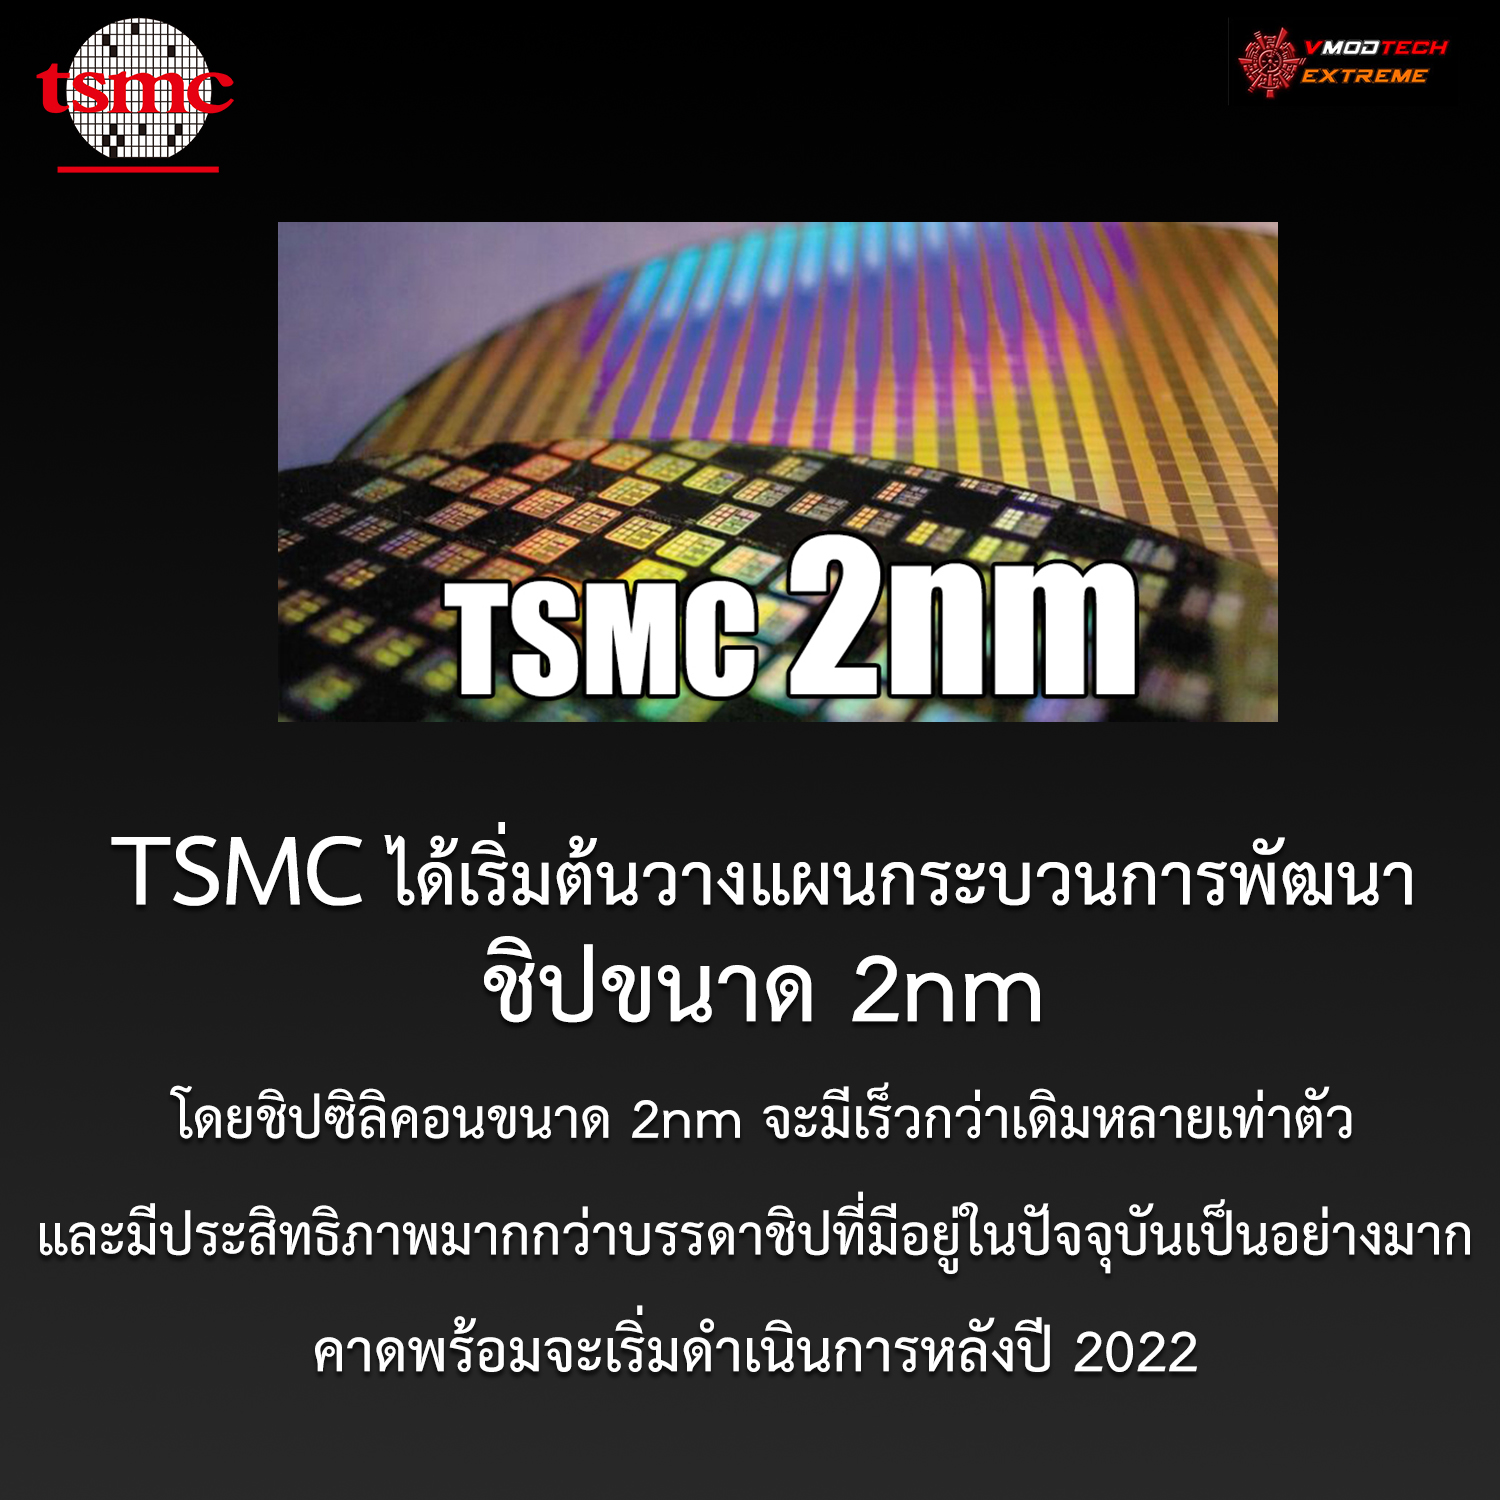 tsmc 2nm 2022 TSMC ได้เริ่มต้นวางแผนกระบวนการพัฒนาชิปขนาด 2nm แล้ว